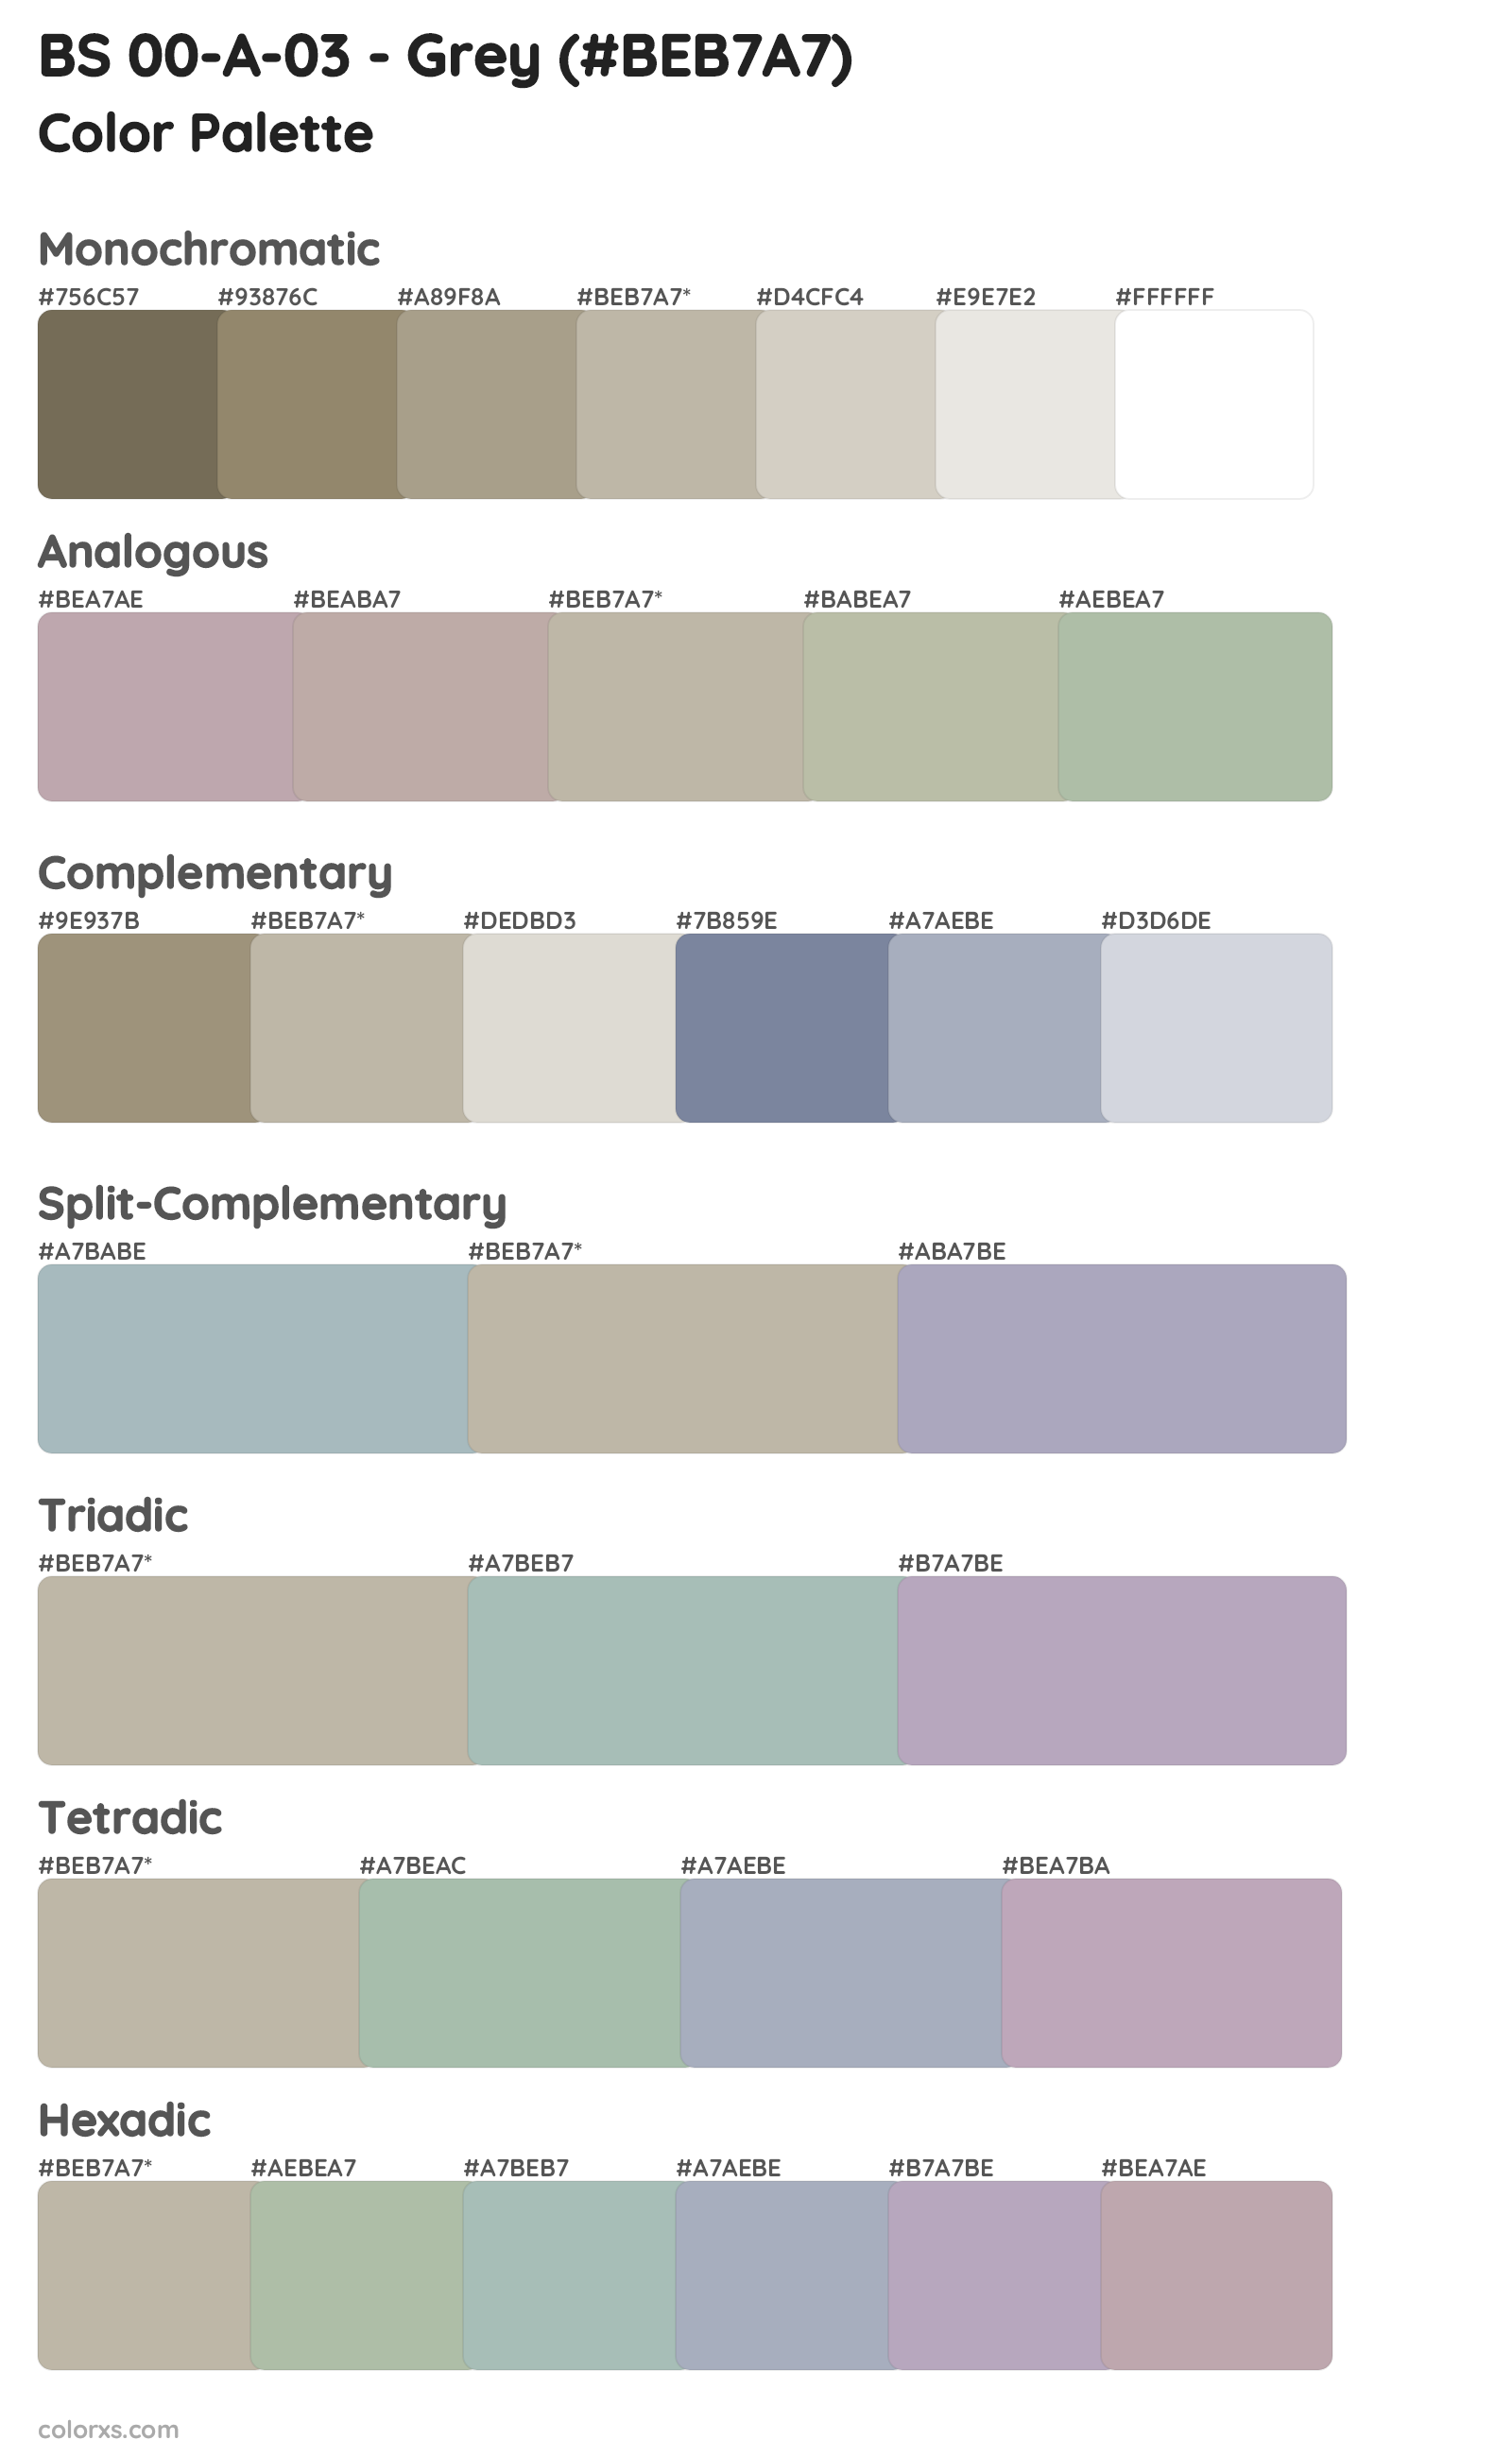 BS 00-A-03 - Grey Color Scheme Palettes